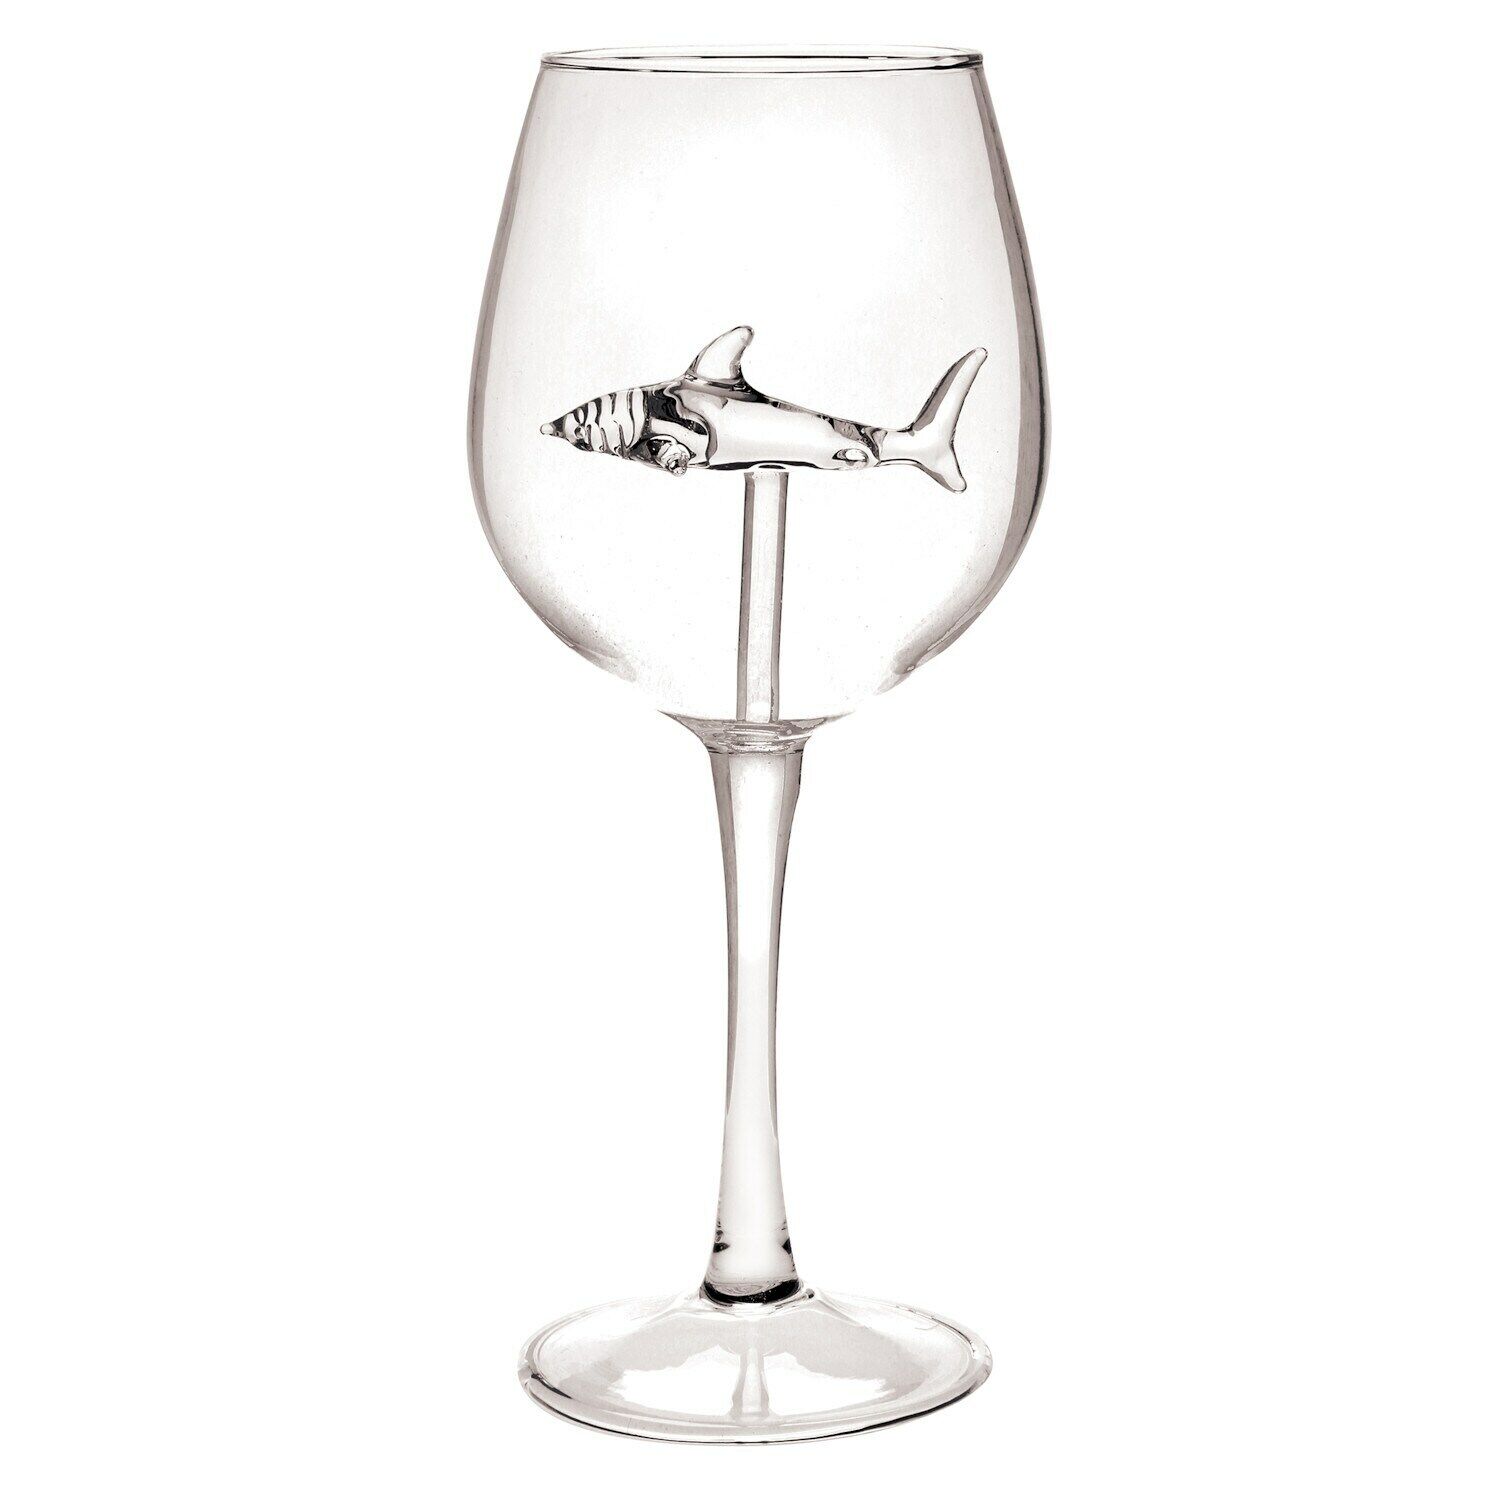 Funny Shark Wine Glass - 8oz Decorative Stemware